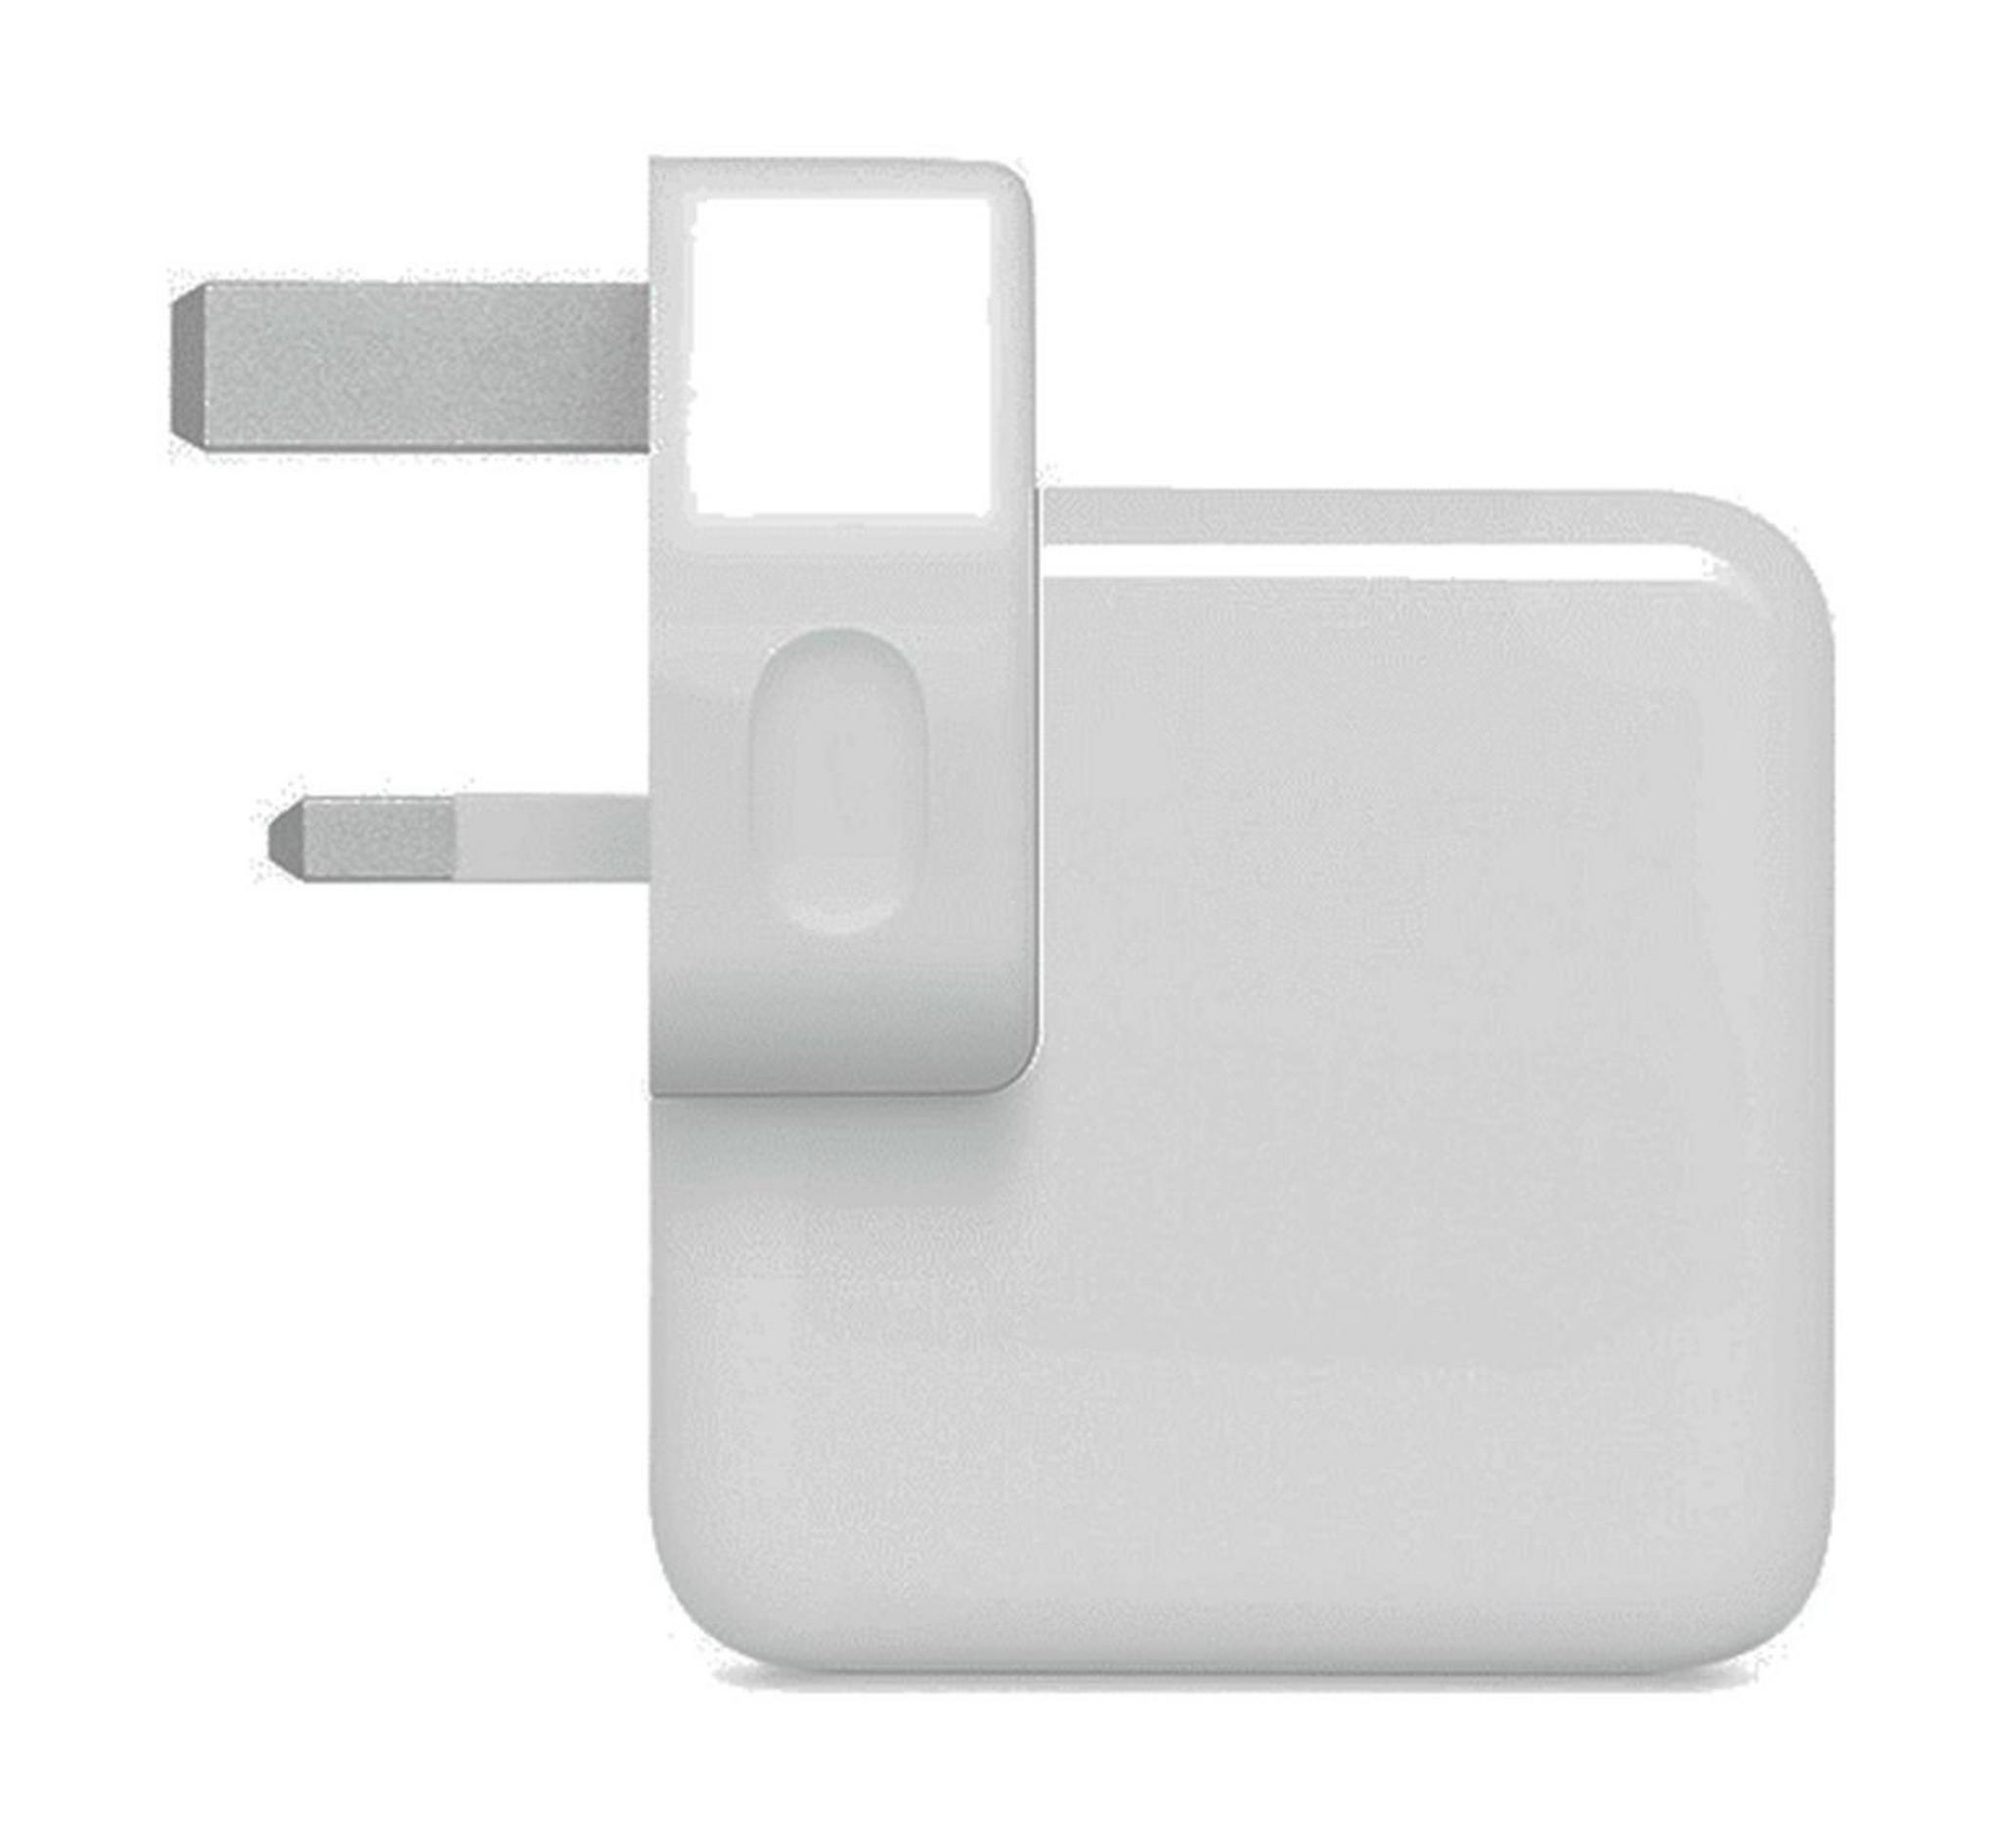 Apple 30W USB-C Power Adapter - MR2A2ZE/A